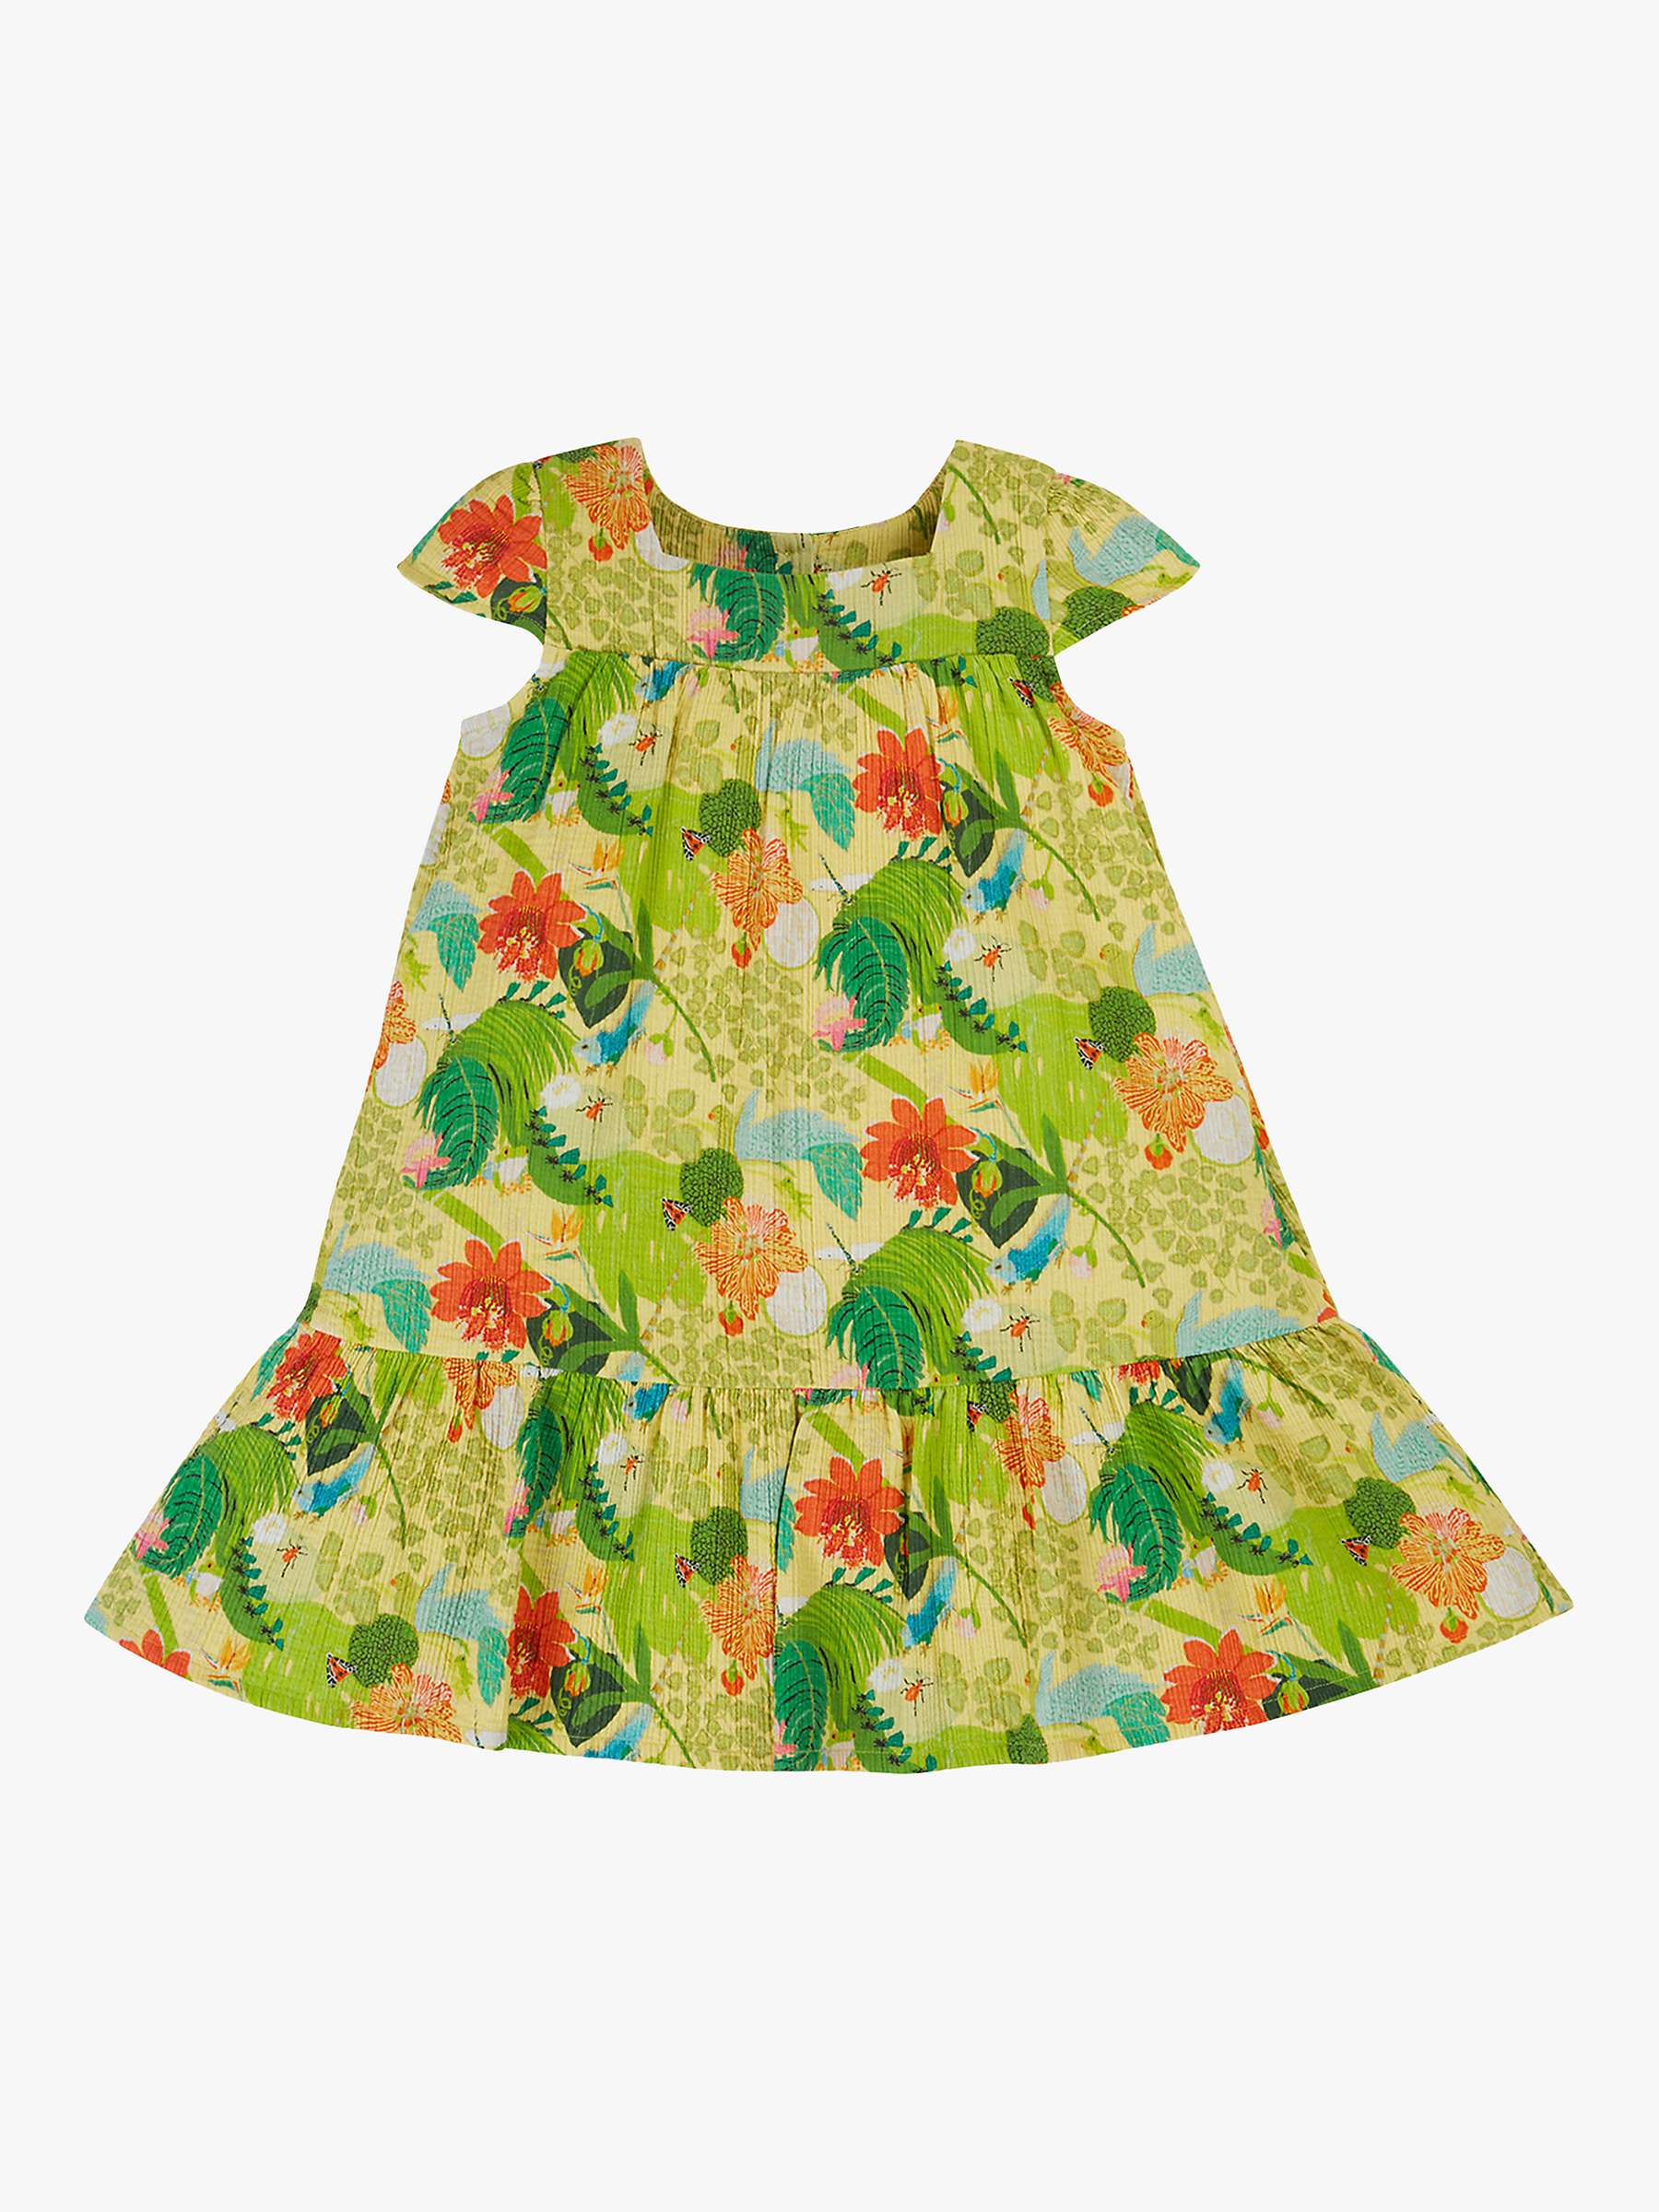 Buy Frugi Kids' Kew Gardens Natalia Organic Cotton Dress, Hot House Online at johnlewis.com